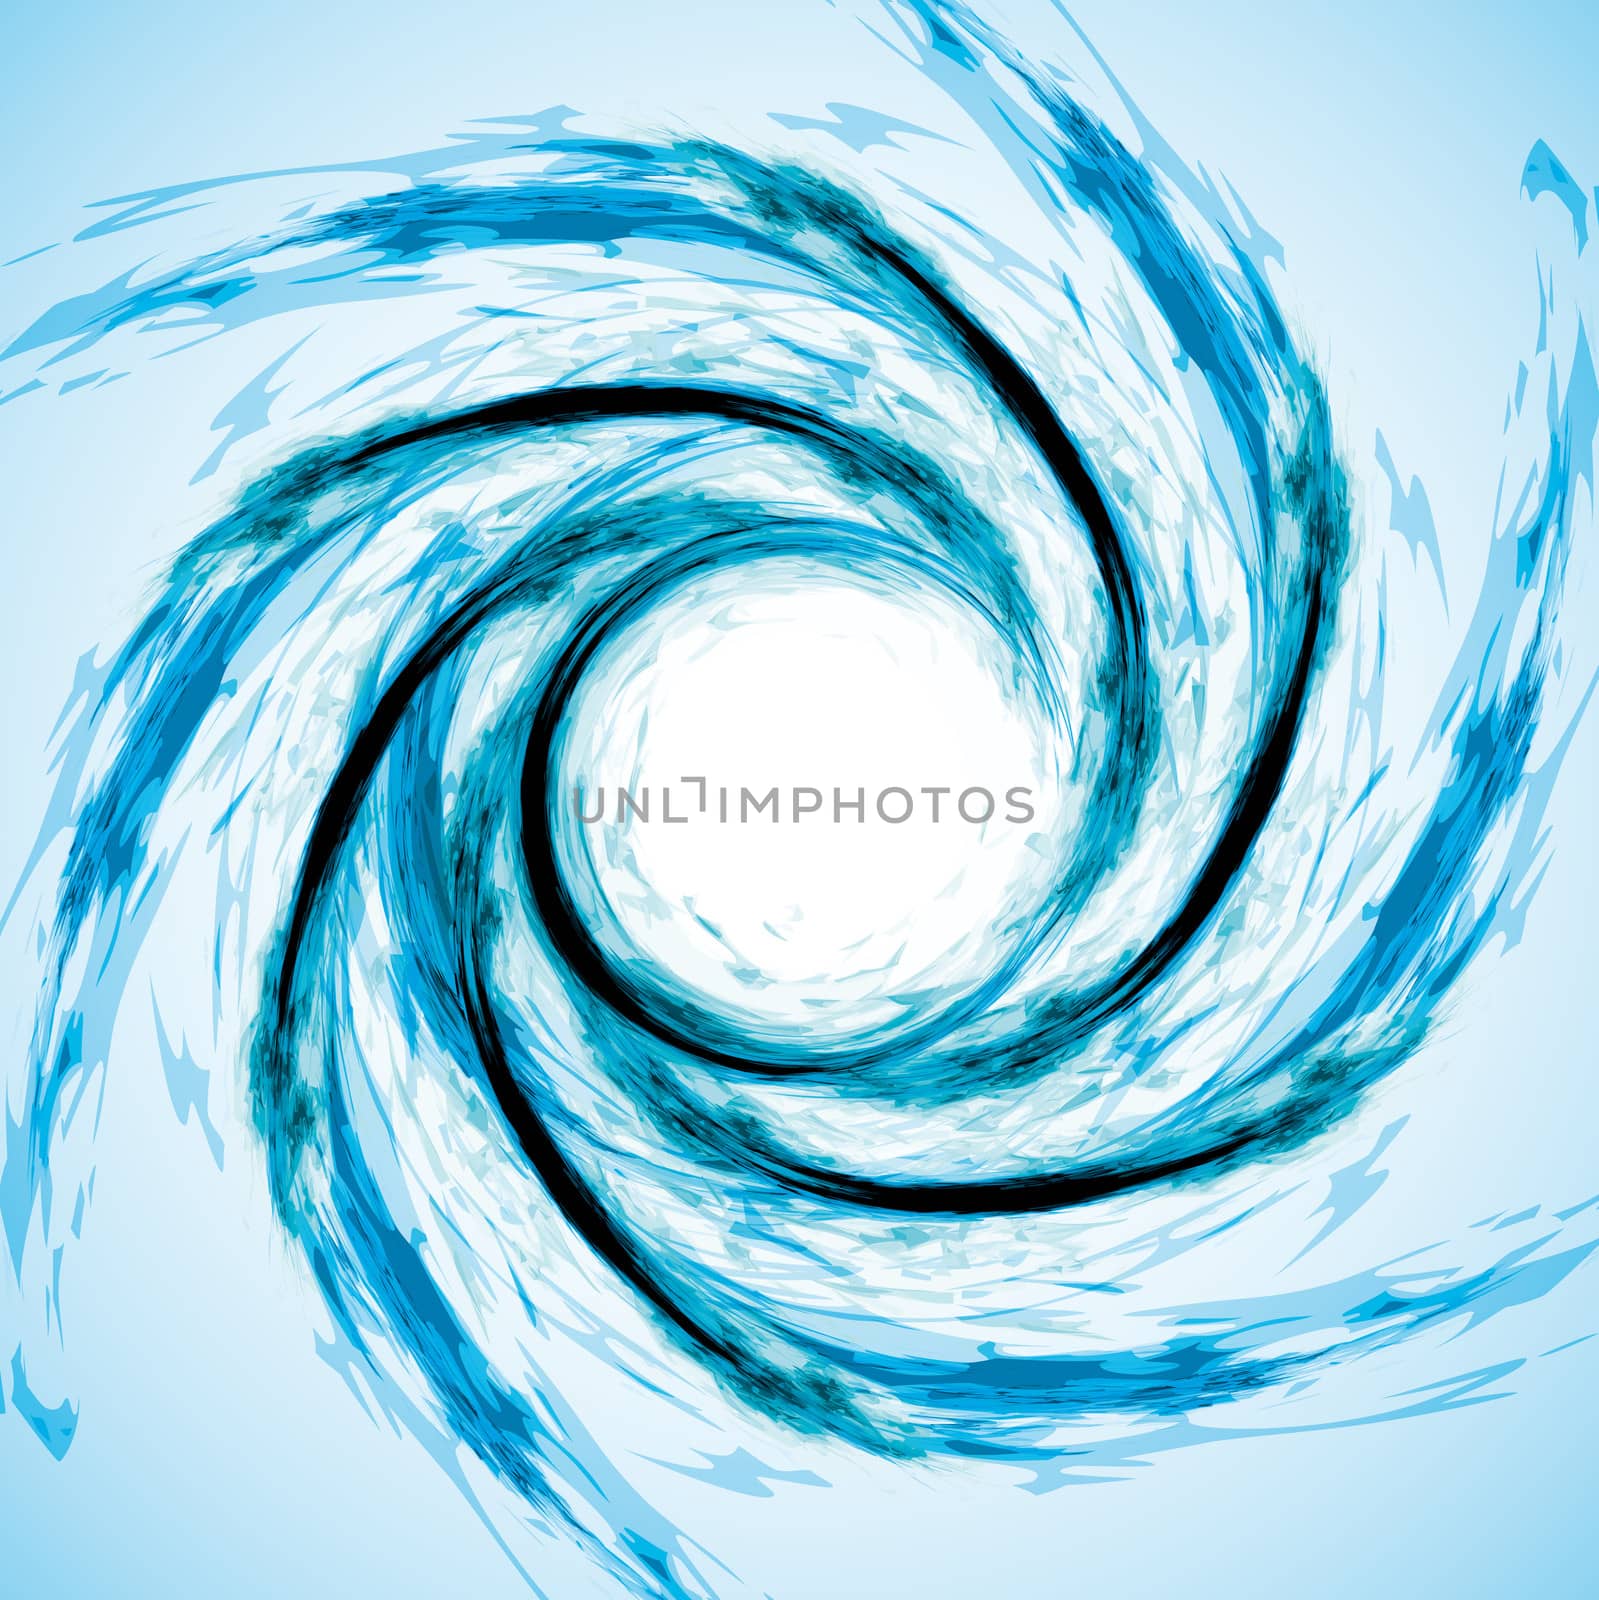 Spiral drawn with brush stroke, vortex effect, blue water.